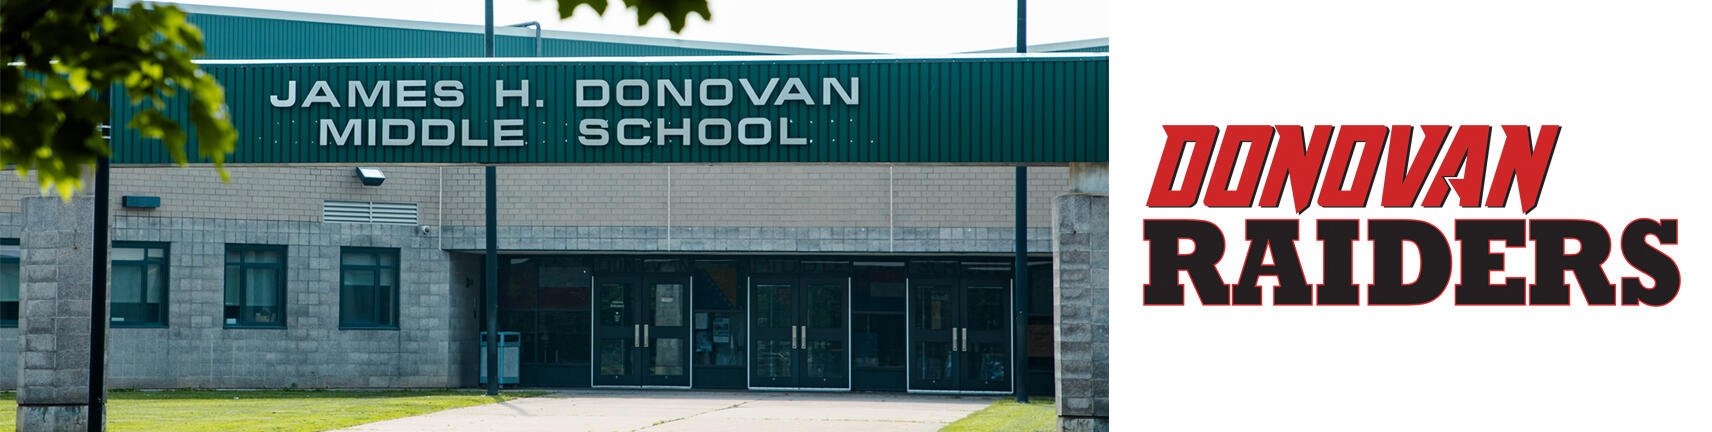 Слика зграде Донован школе и логотипа Донован Рејдерс